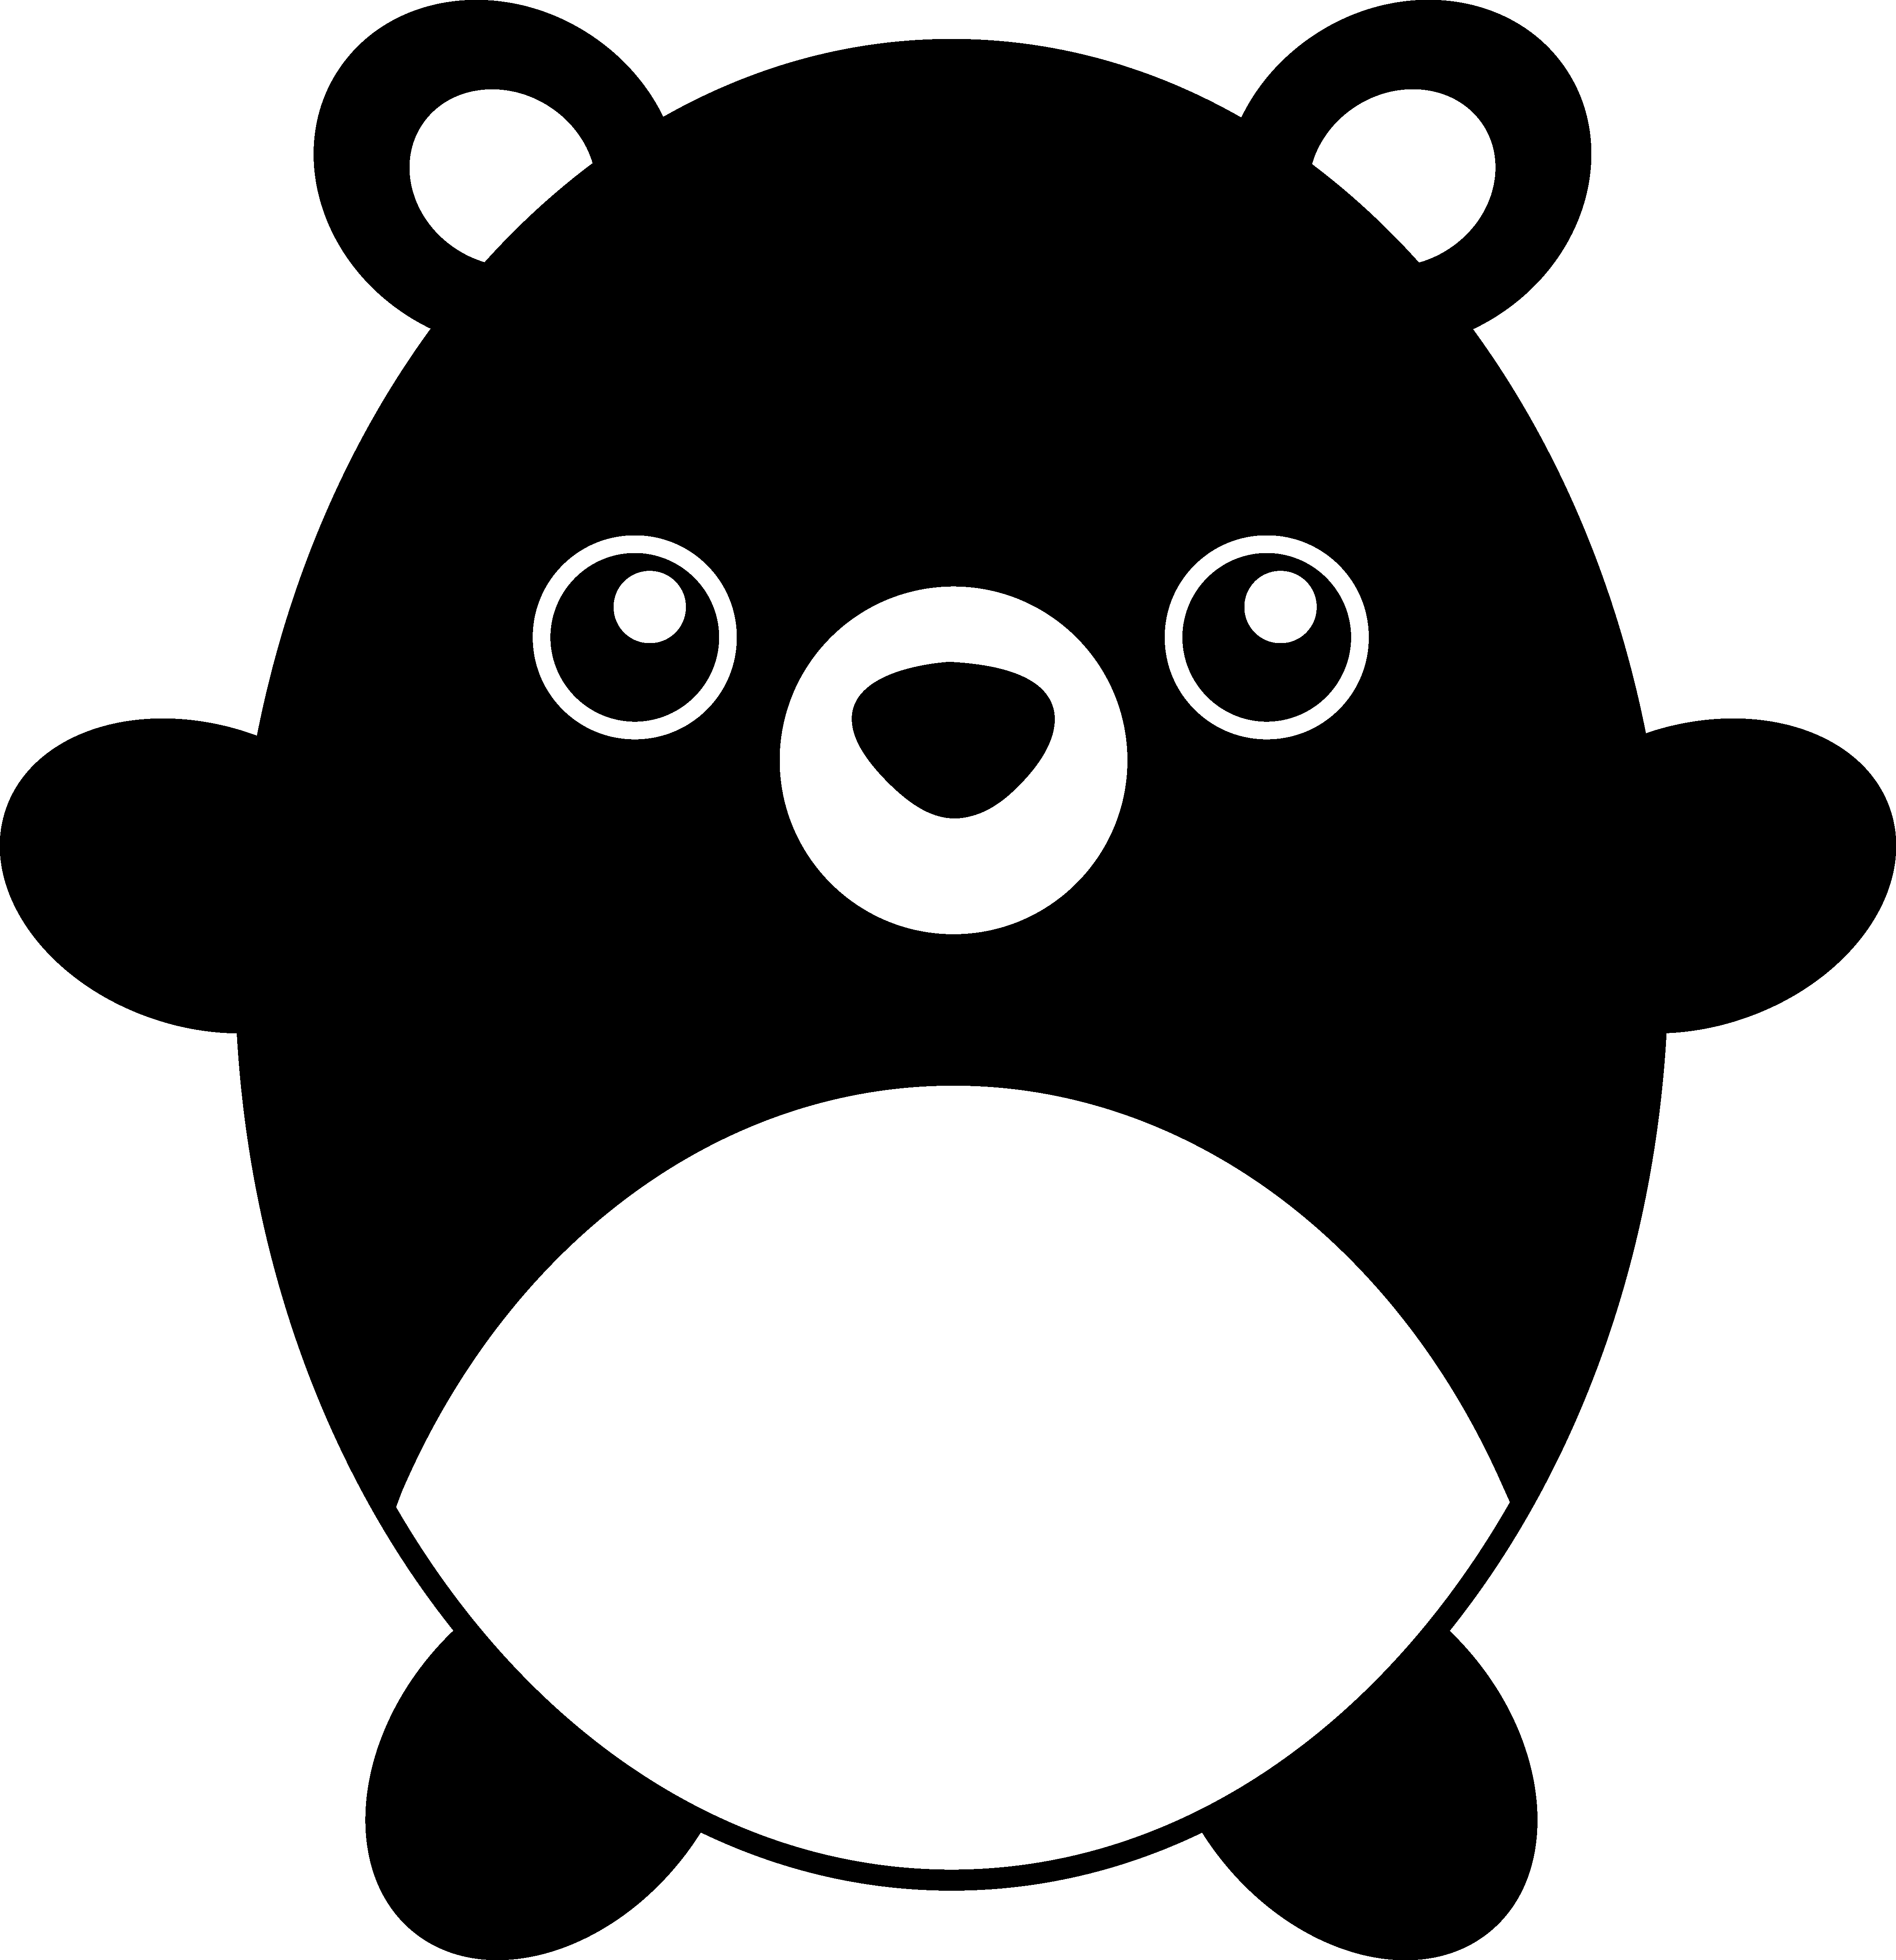 Cute Chubby Black Teddy Bear - Cute Teddy Bear Silhouette (4517x4670)